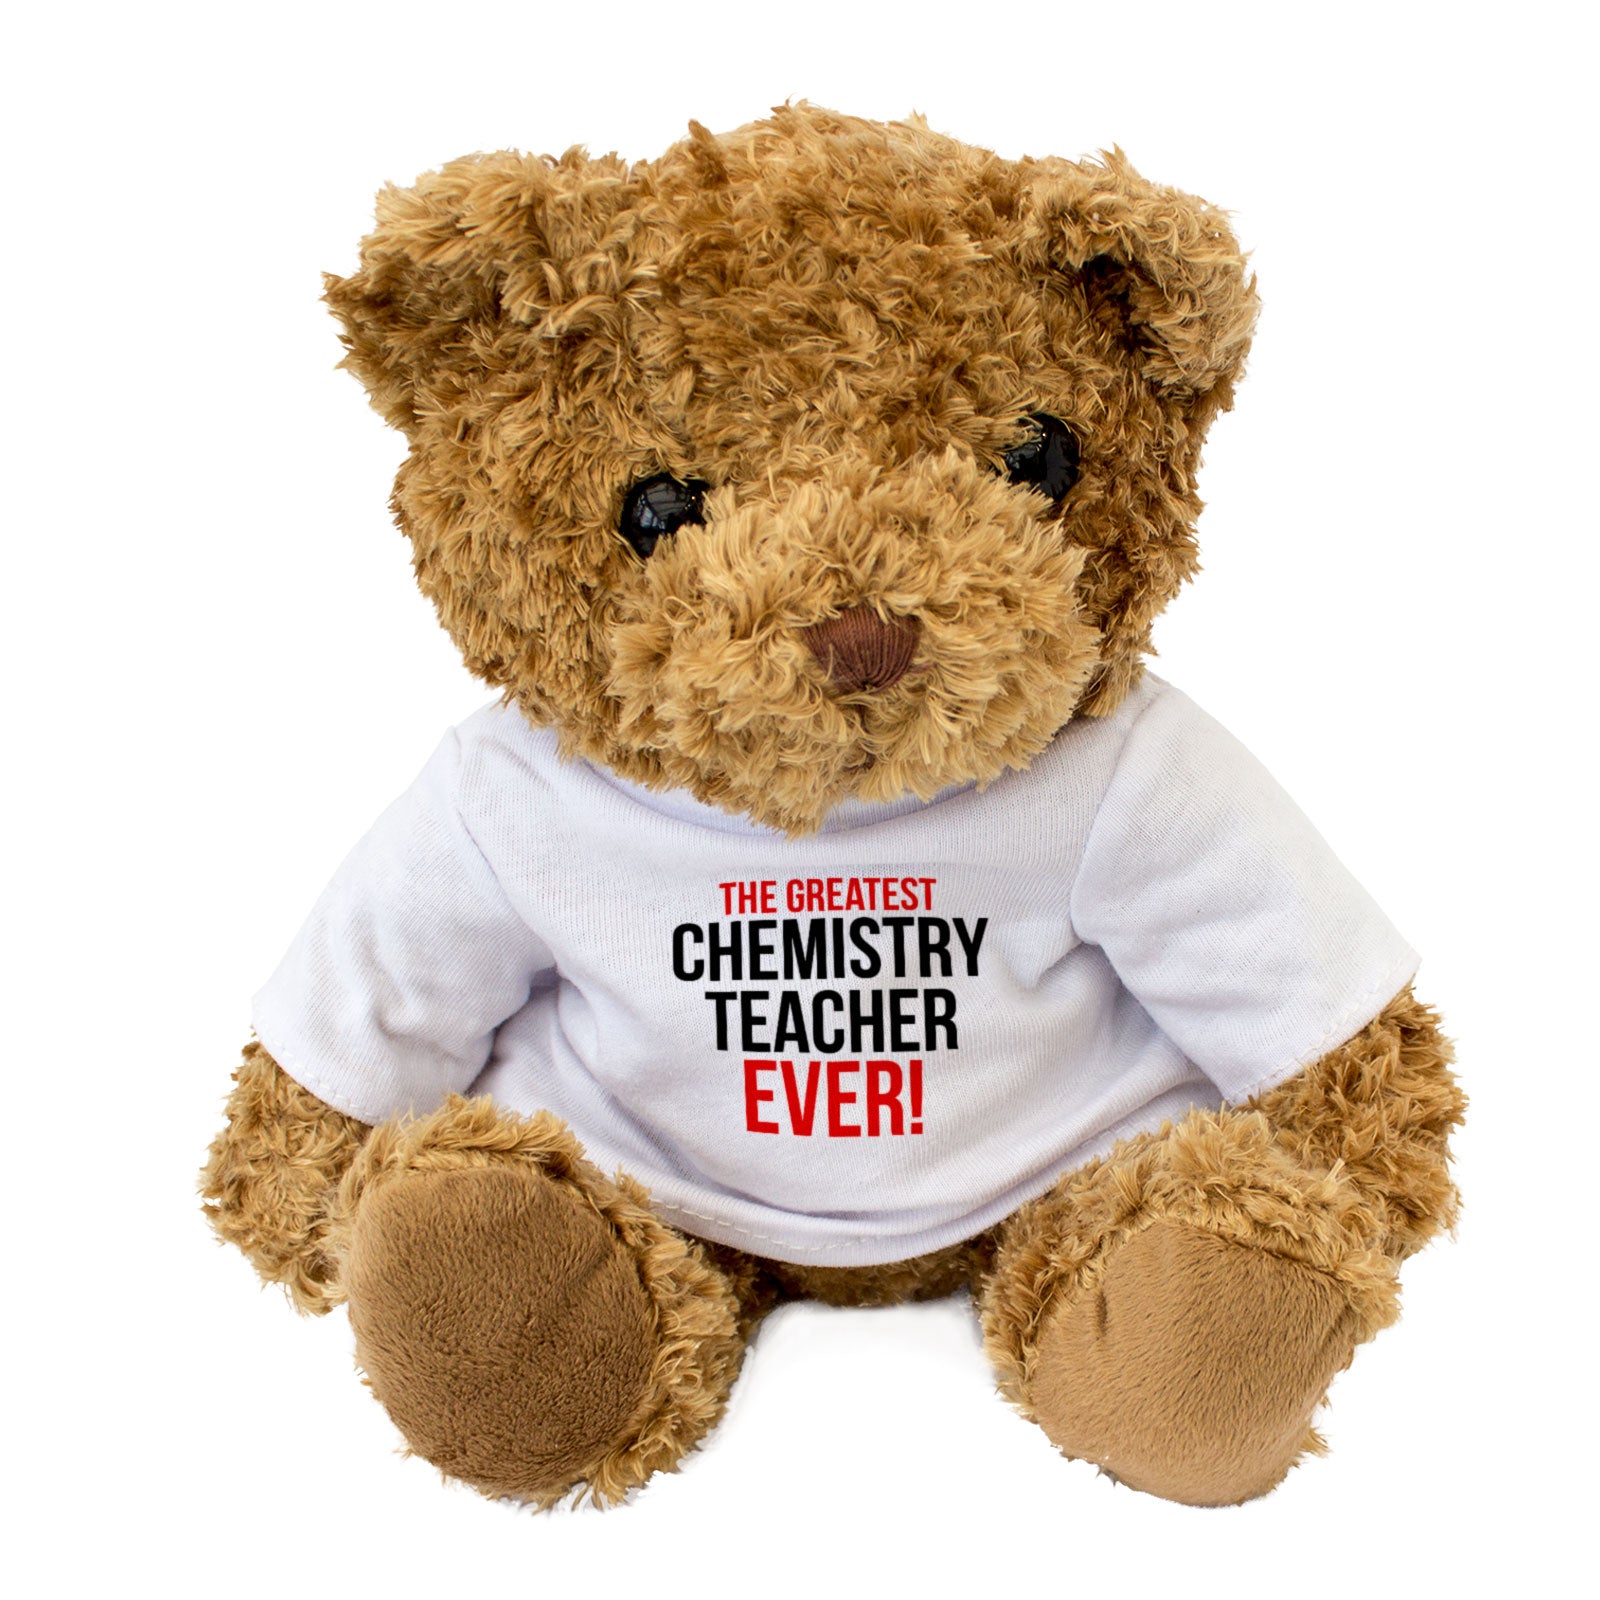 The Greatest Chemistry Teacher Ever - Teddy Bear